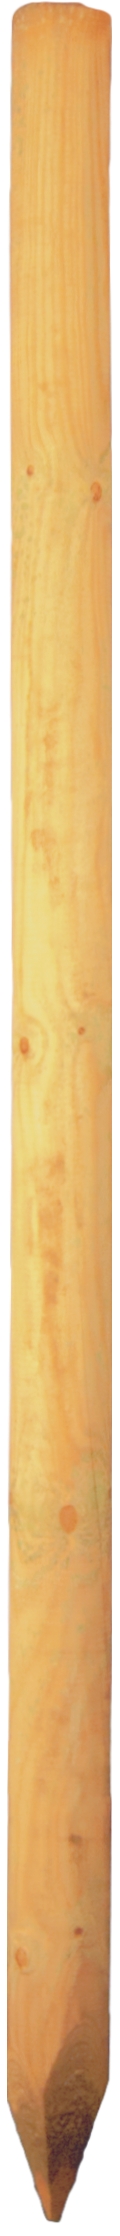 Baumpfahl grün 10 x 175 cm gefräst, gefast, gespitzt